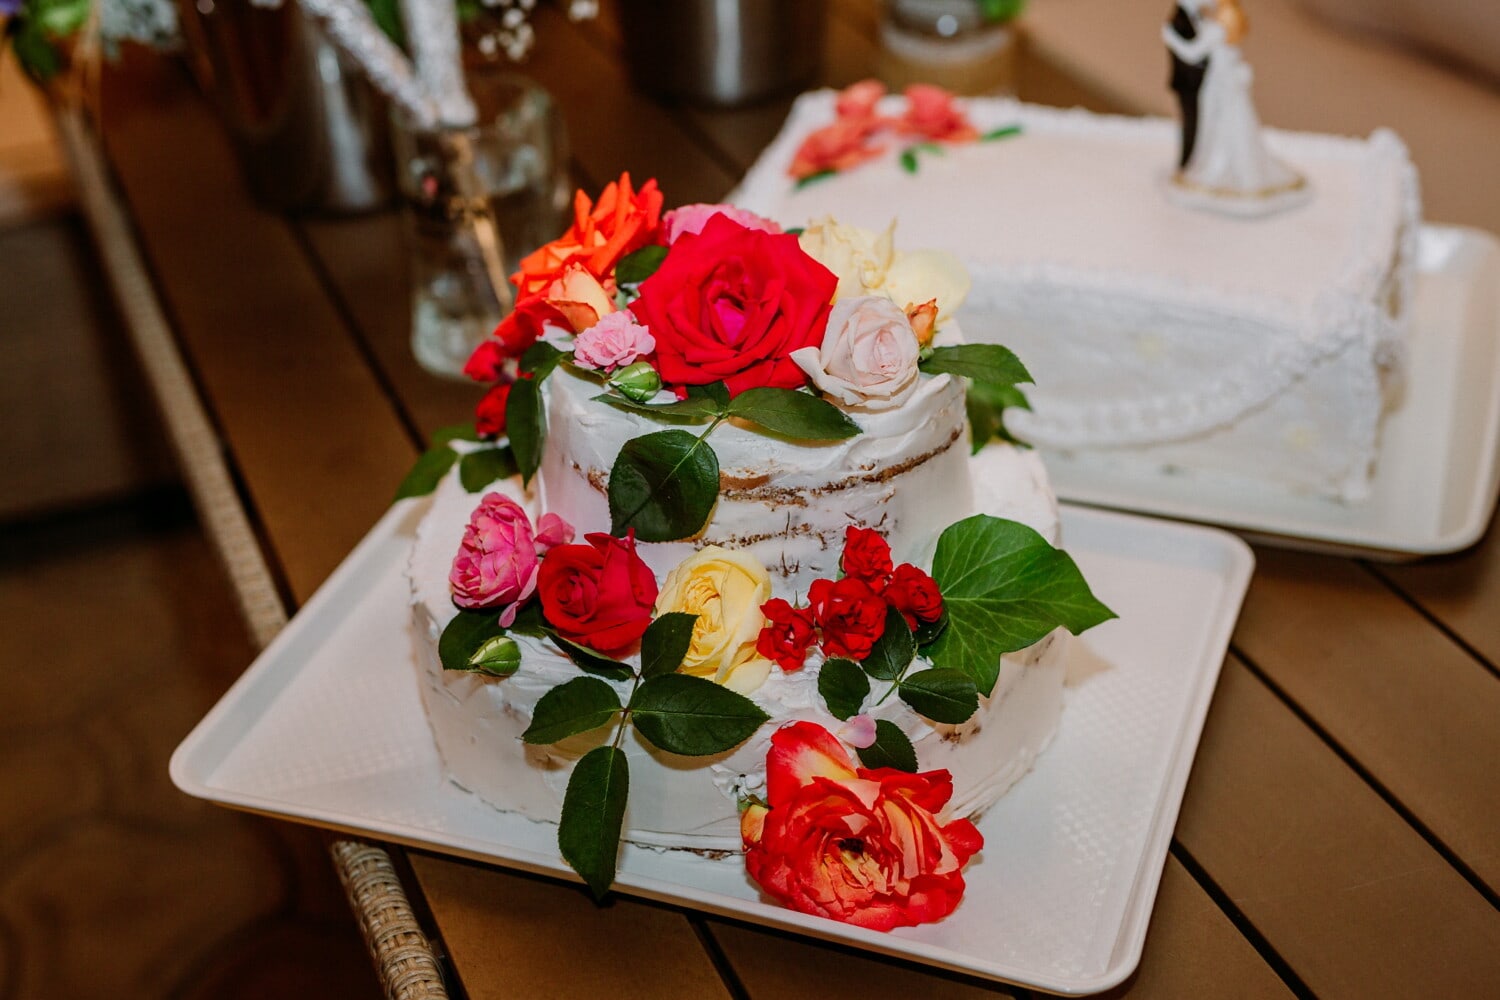 バラ, ウエディング ケーキ, 花, 愛, 花束, 結婚式, 配置, ローズ, 装飾, 食品